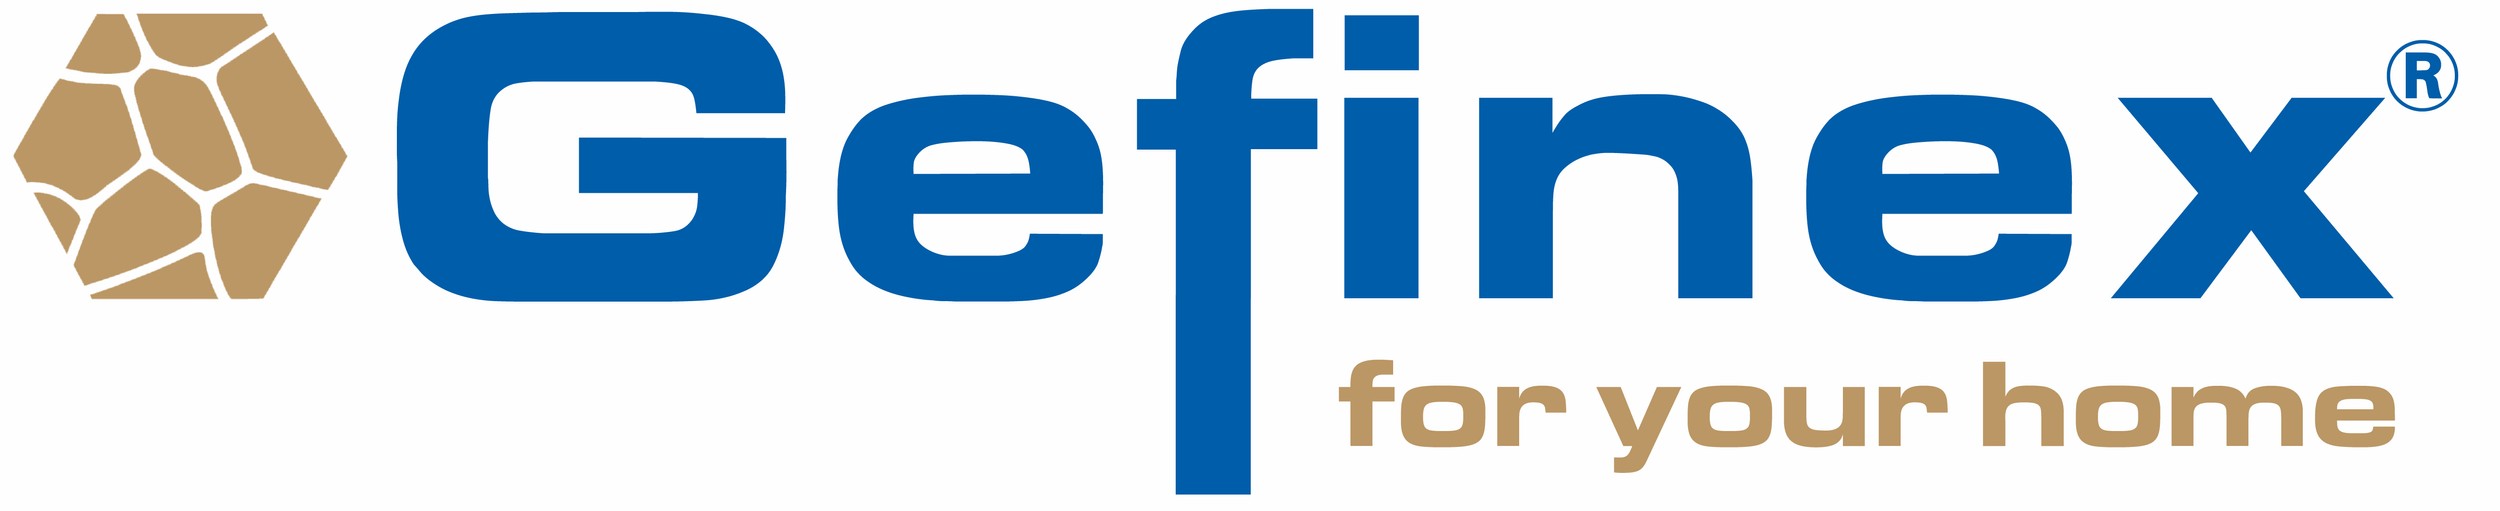 Gefinex GmbH